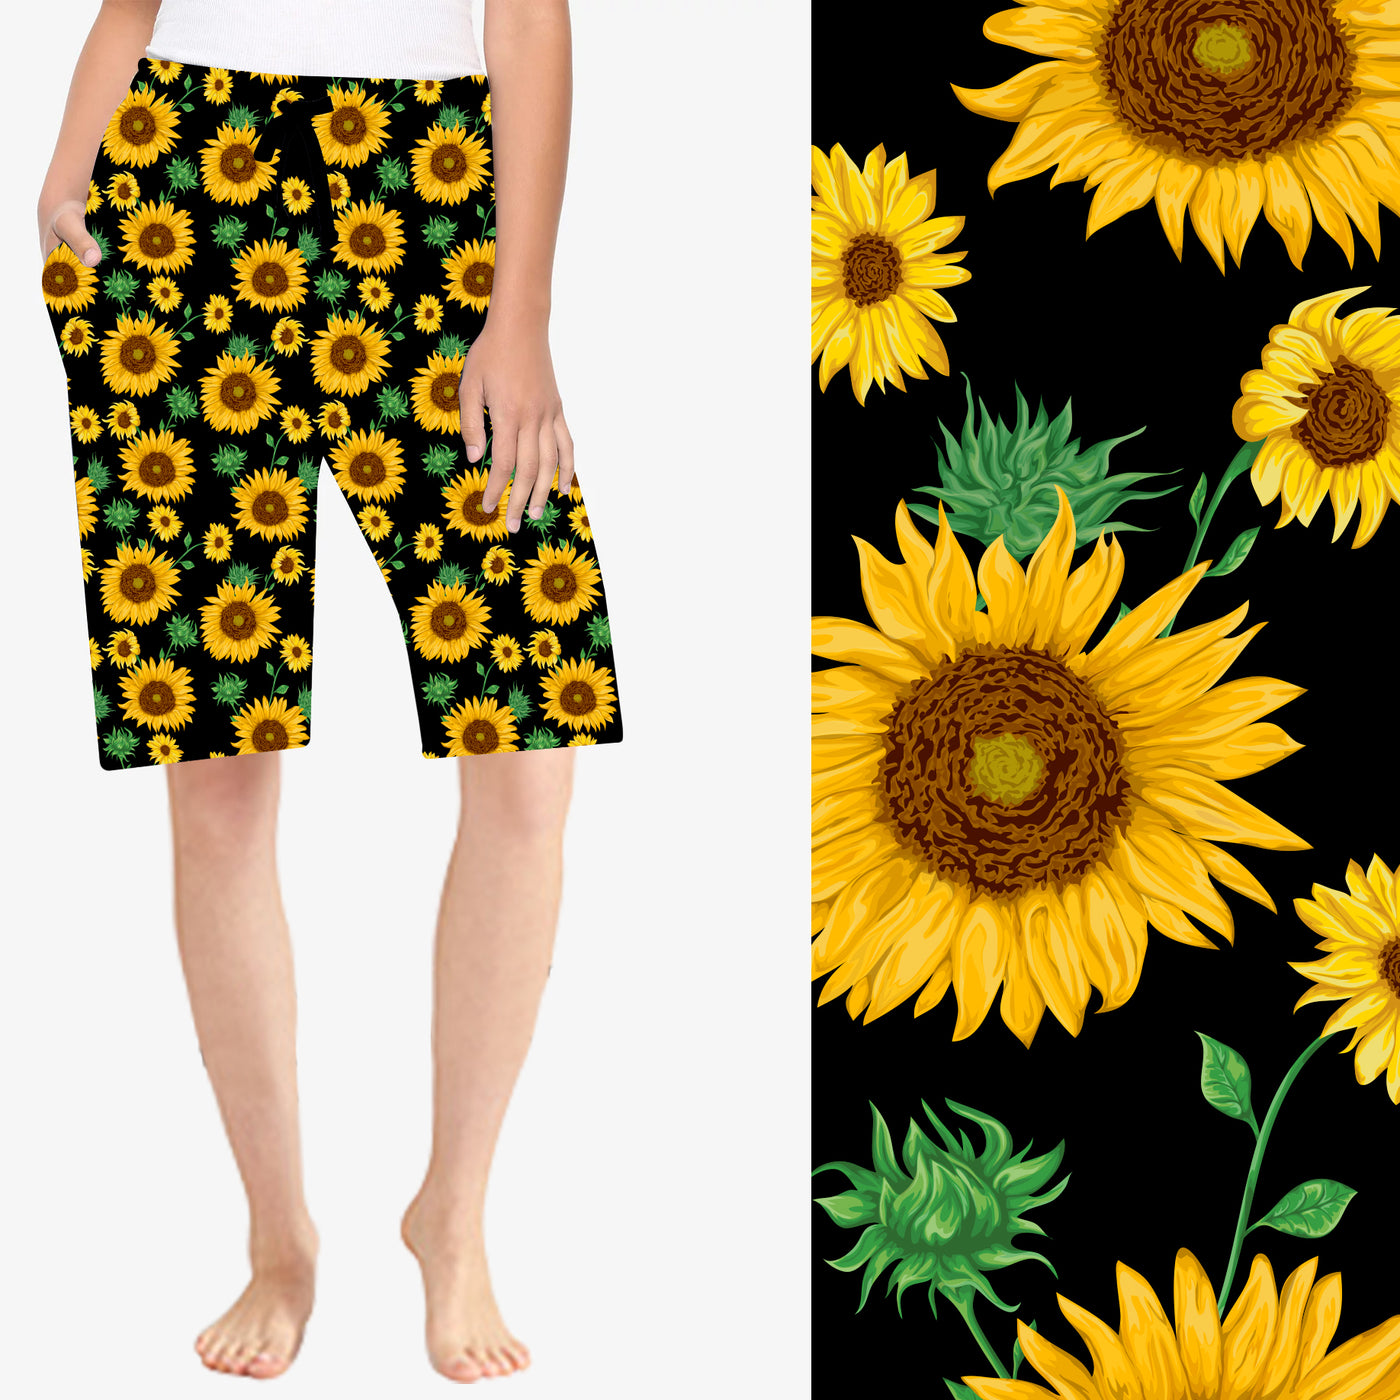 Sunflower 2 Lounge Shorts